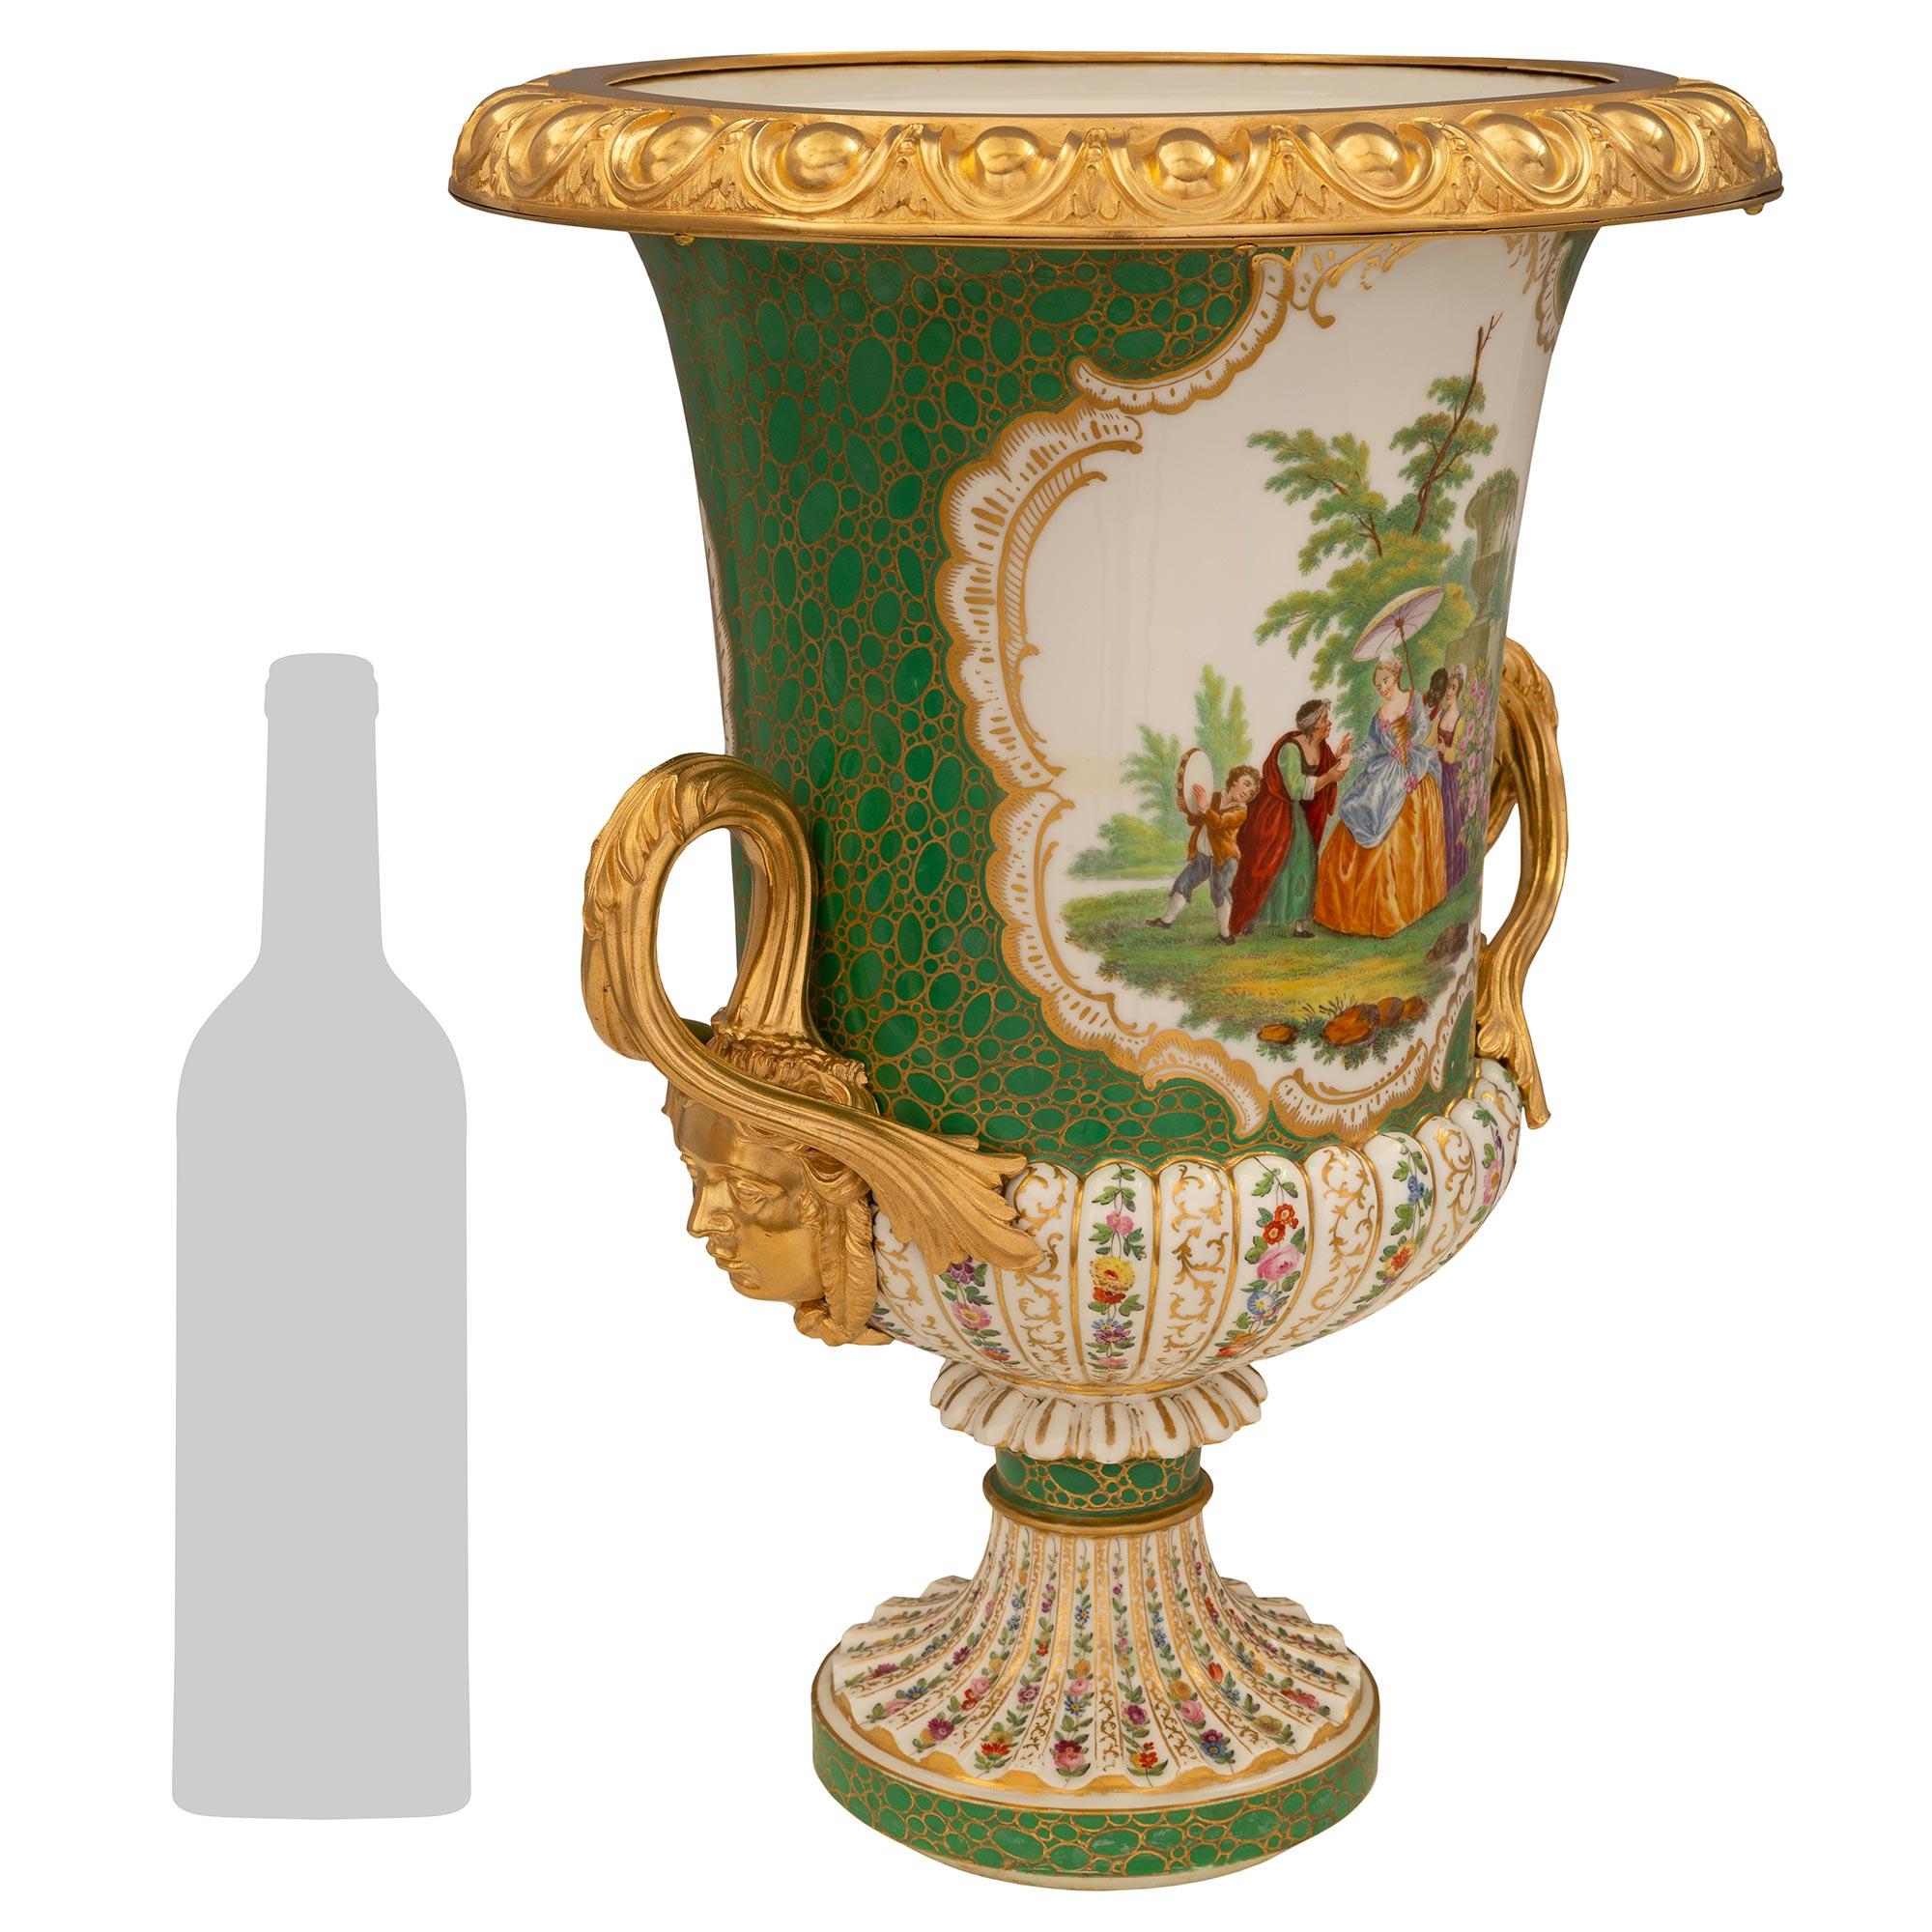 Ein schönes Paar französischer Porzellanurnen aus dem 19. Jahrhundert, Louis XVI st. Sèvres. Jede Campagna-förmige Vase wird von einem runden Sockel mit einem schönen vergoldeten Akzent Blase wie Design unter dem eleganten geriffelten Sockel